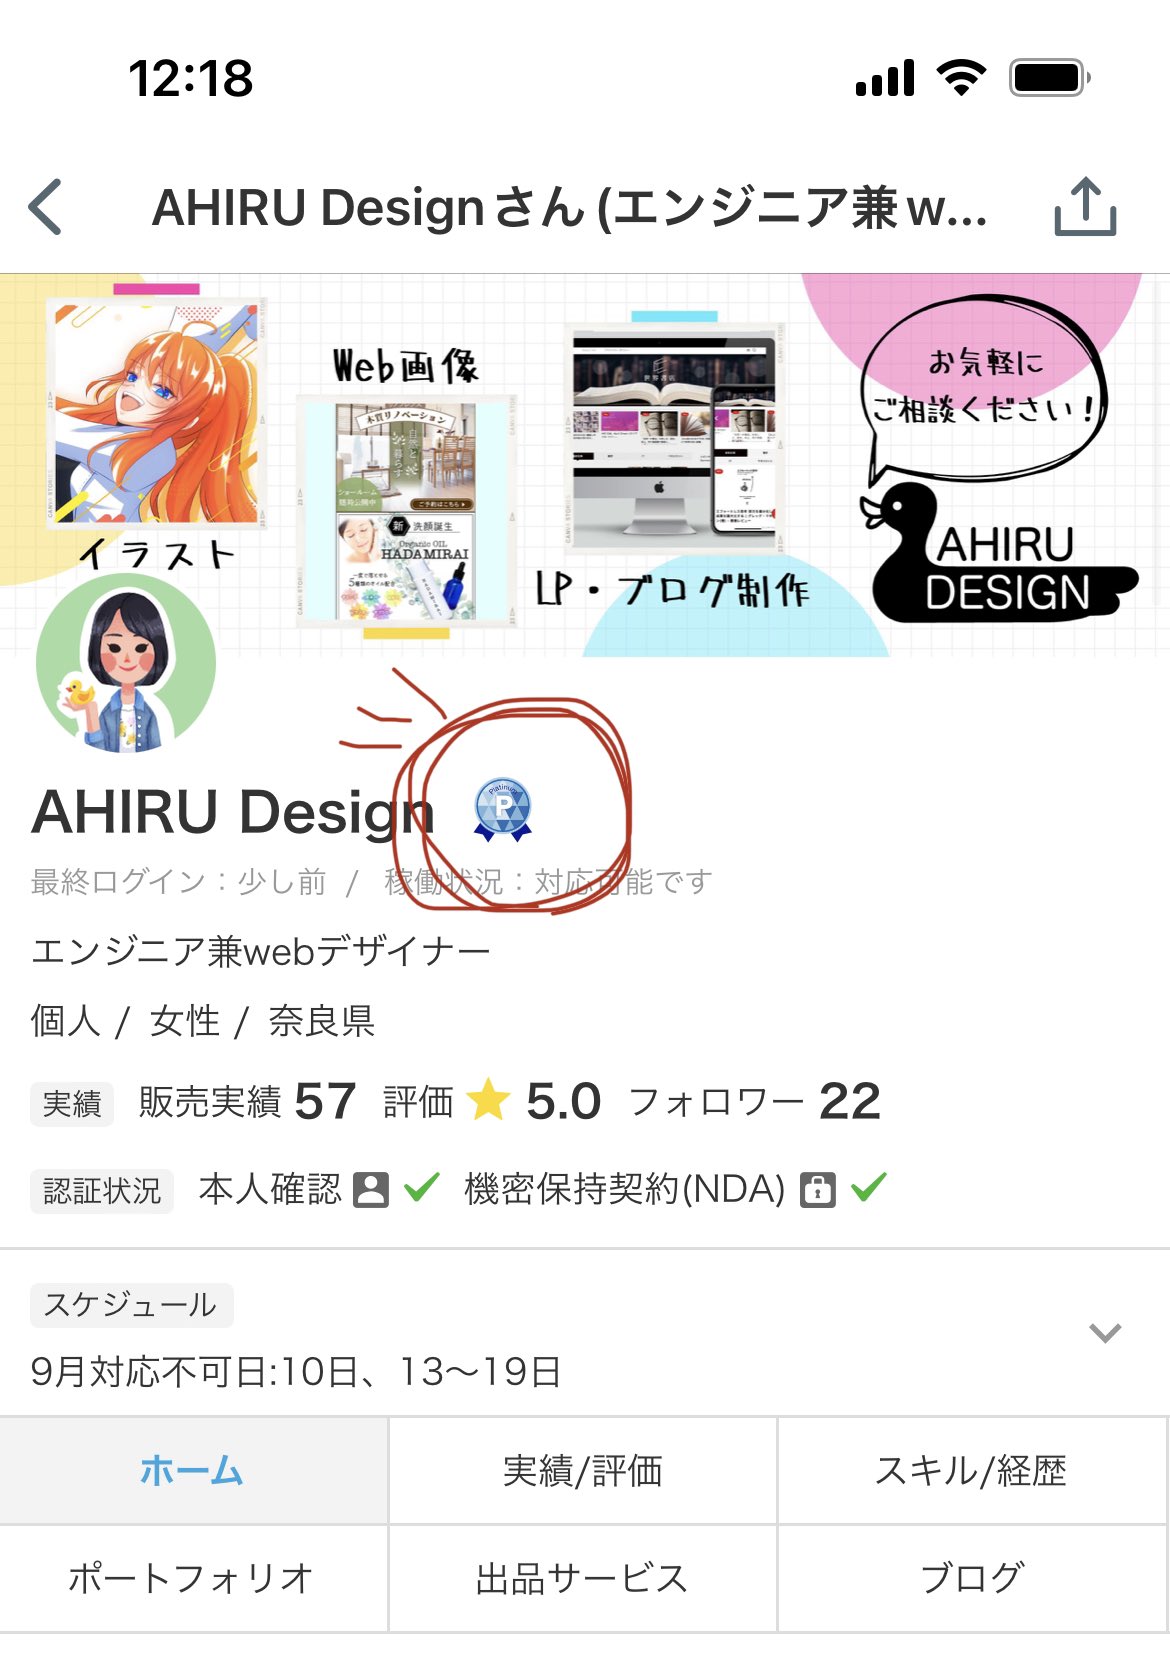 あひる Webデザイン イラスト 動画 Ahiru Design Twitter